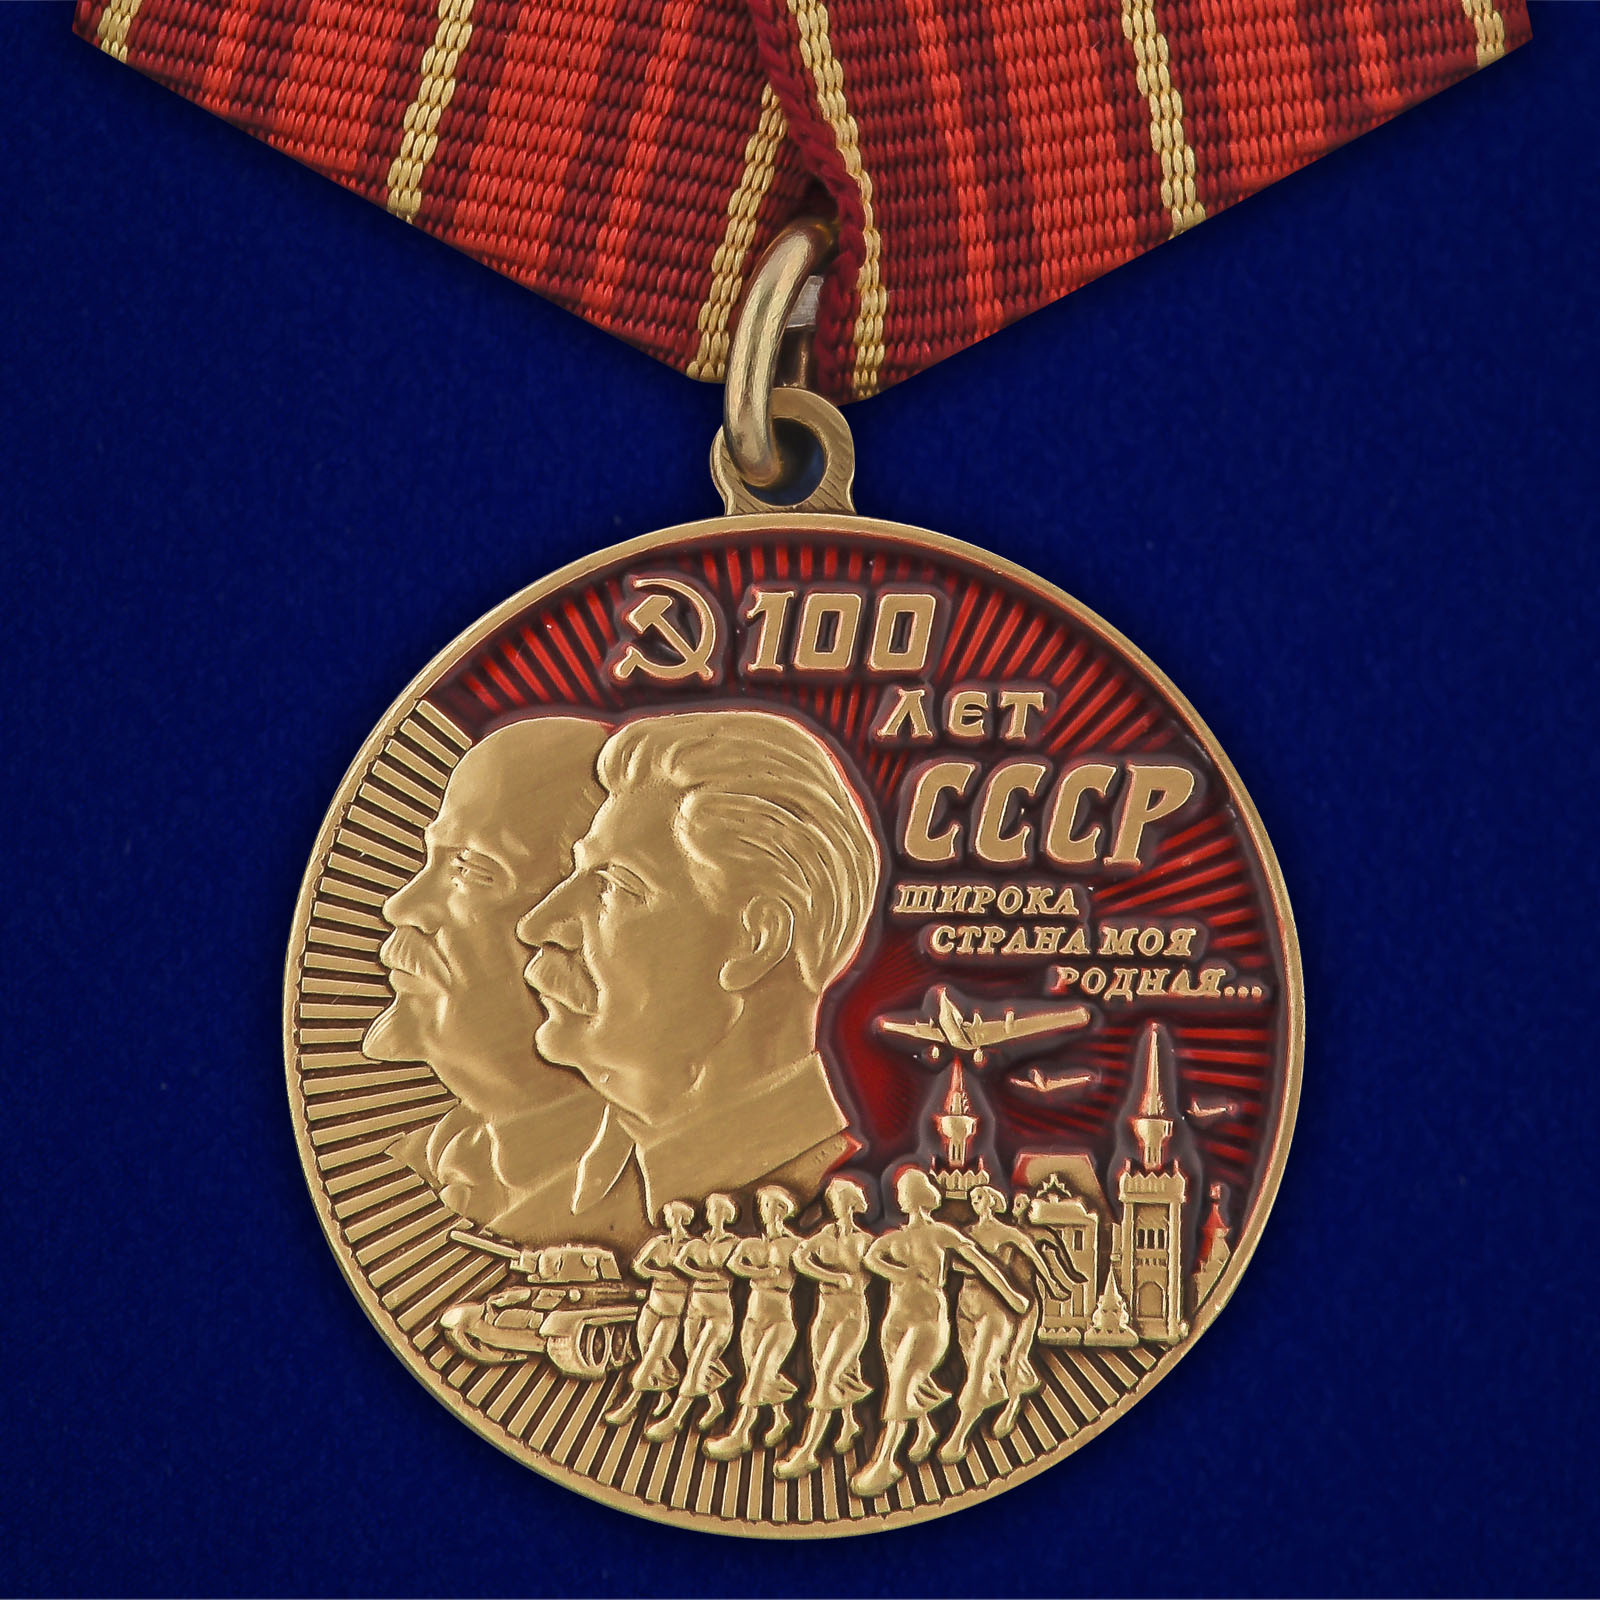 Купить медаль 100 лет СССР онлайн выгодно